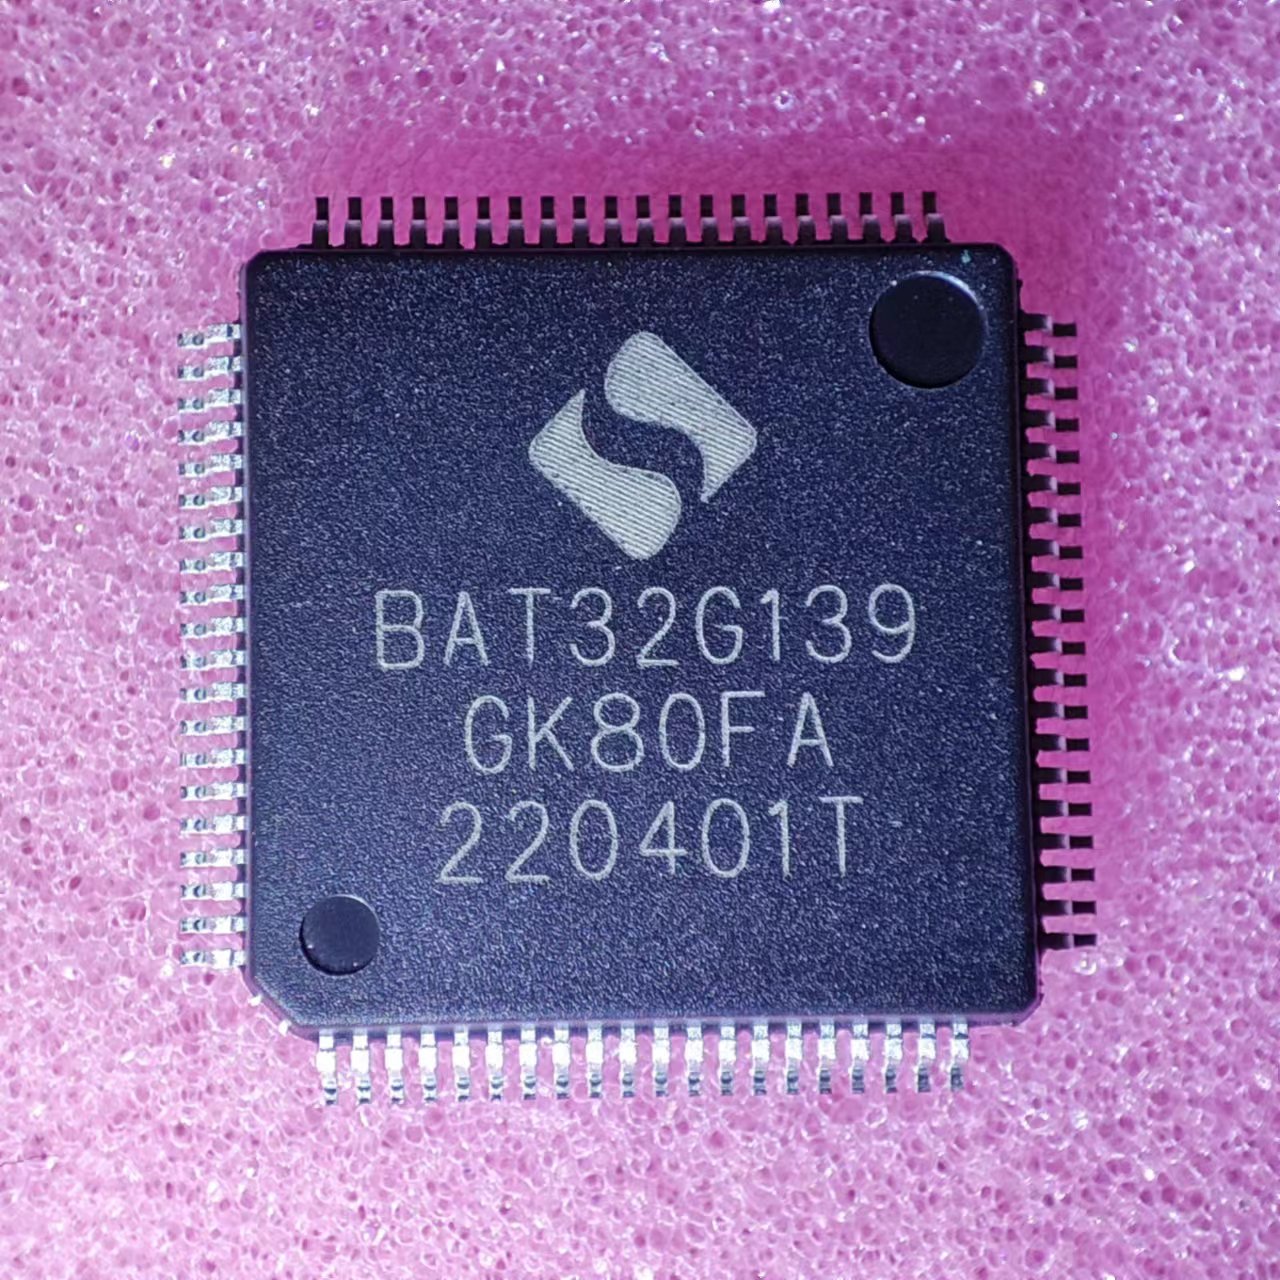 中微 BAT32G139GK80FA LQFP80 低功耗32位MCU